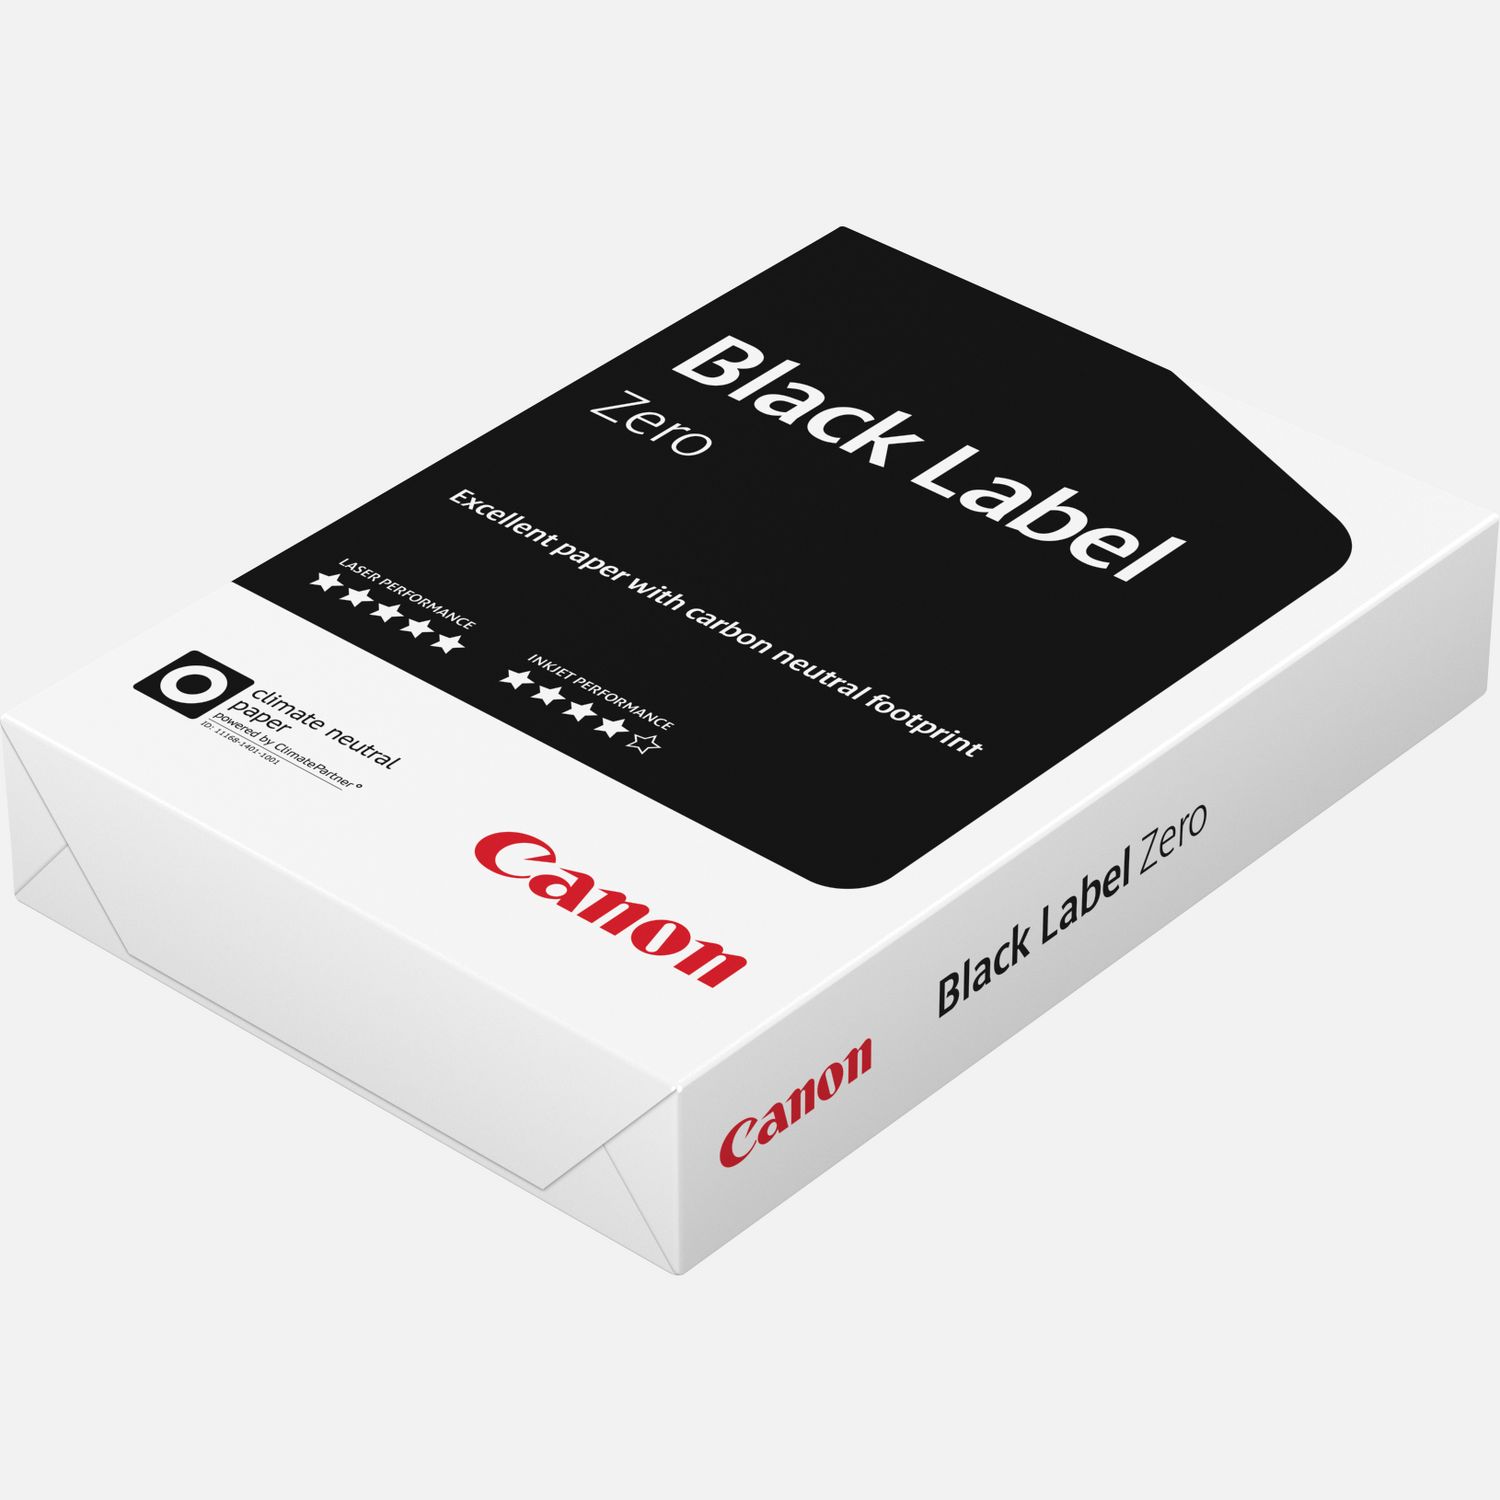 Bancale Carta per fotocopie Canon Black formato A4 – 80 gr.